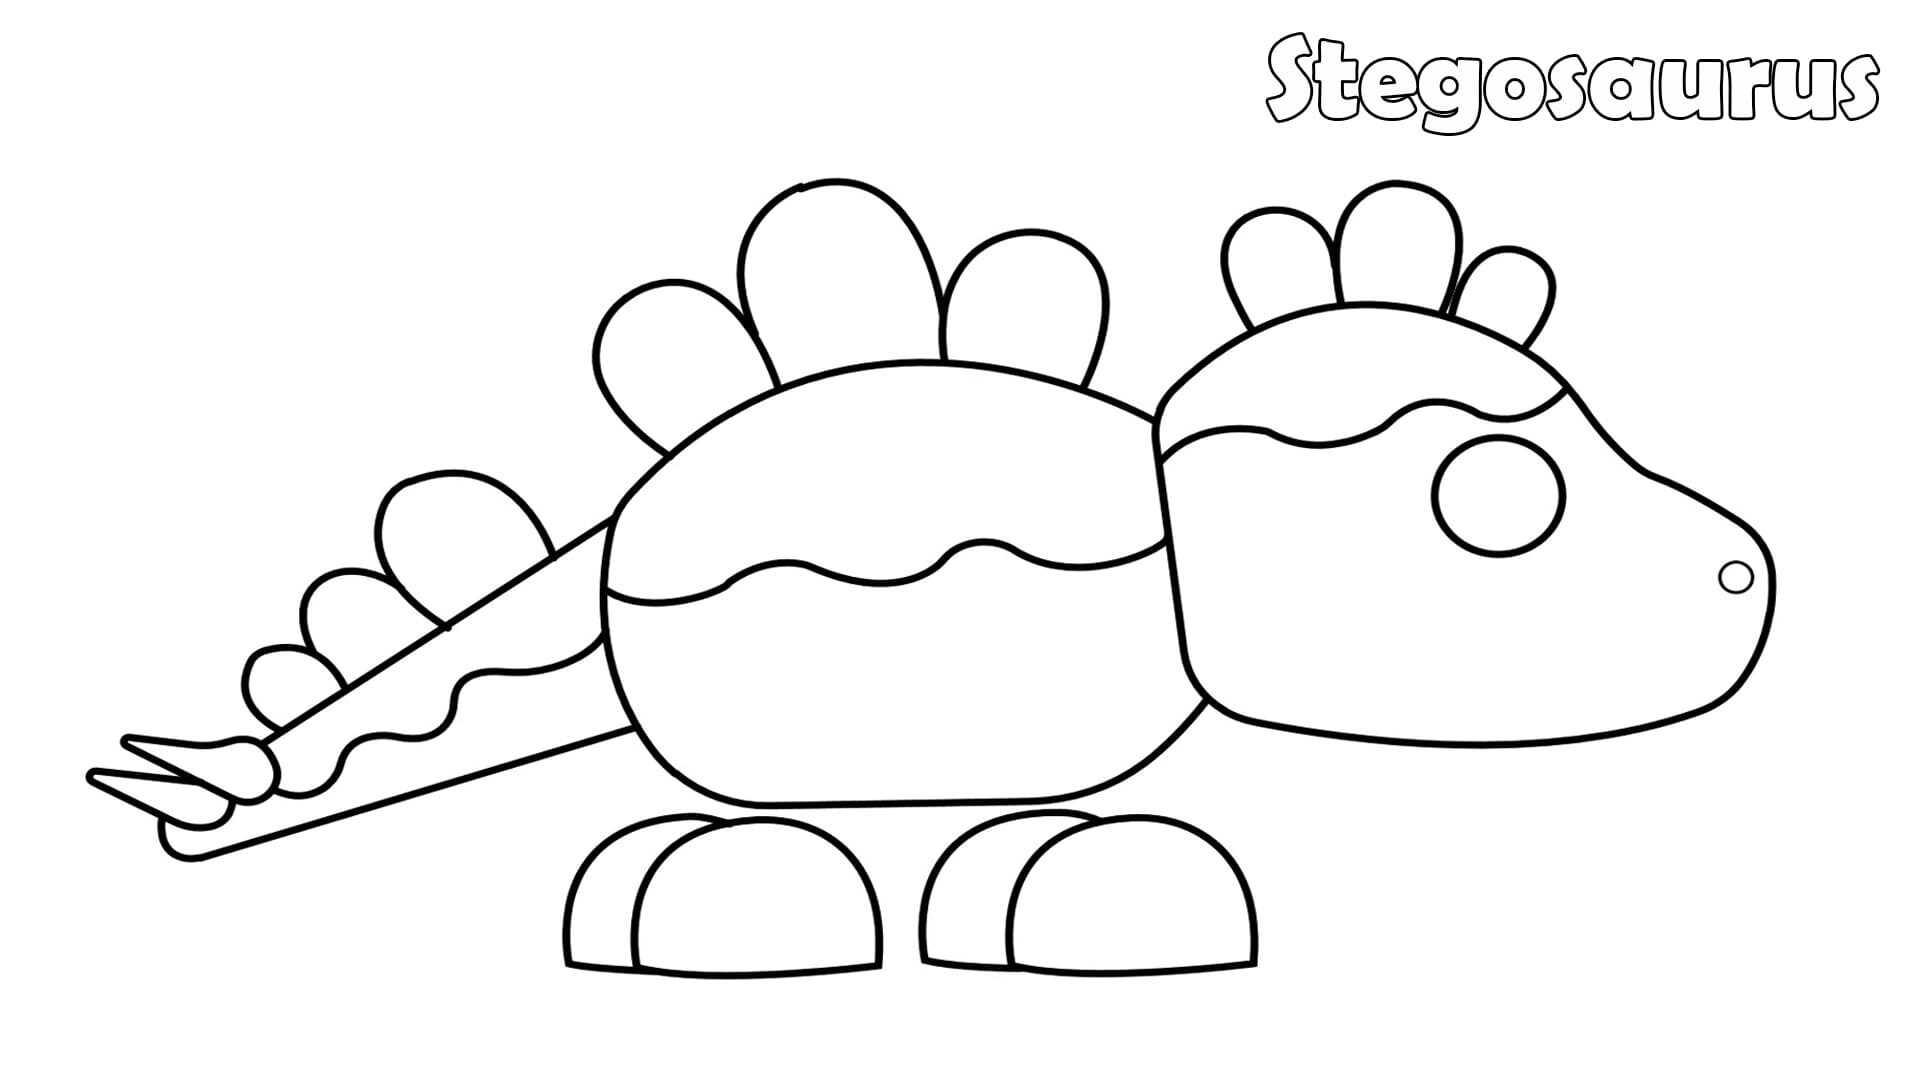 De Stegosaurus heeft afgeronde platen langs zijn kop, rug en punten op zijn staart in Adopt me van Adopt me